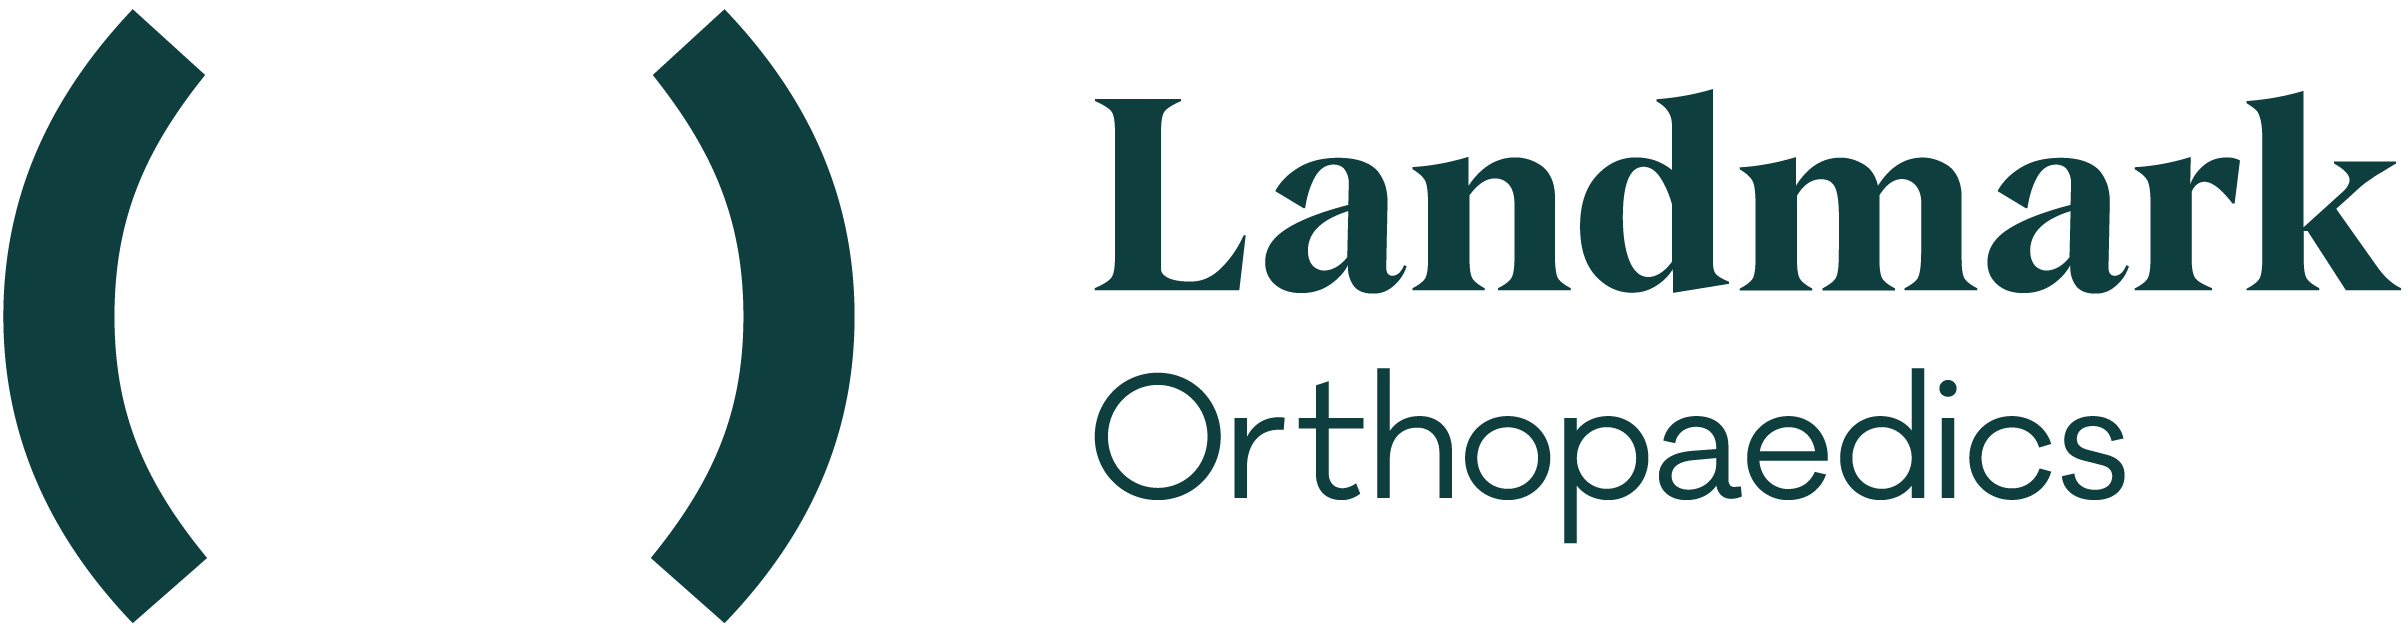 Landmark Orthopaedics